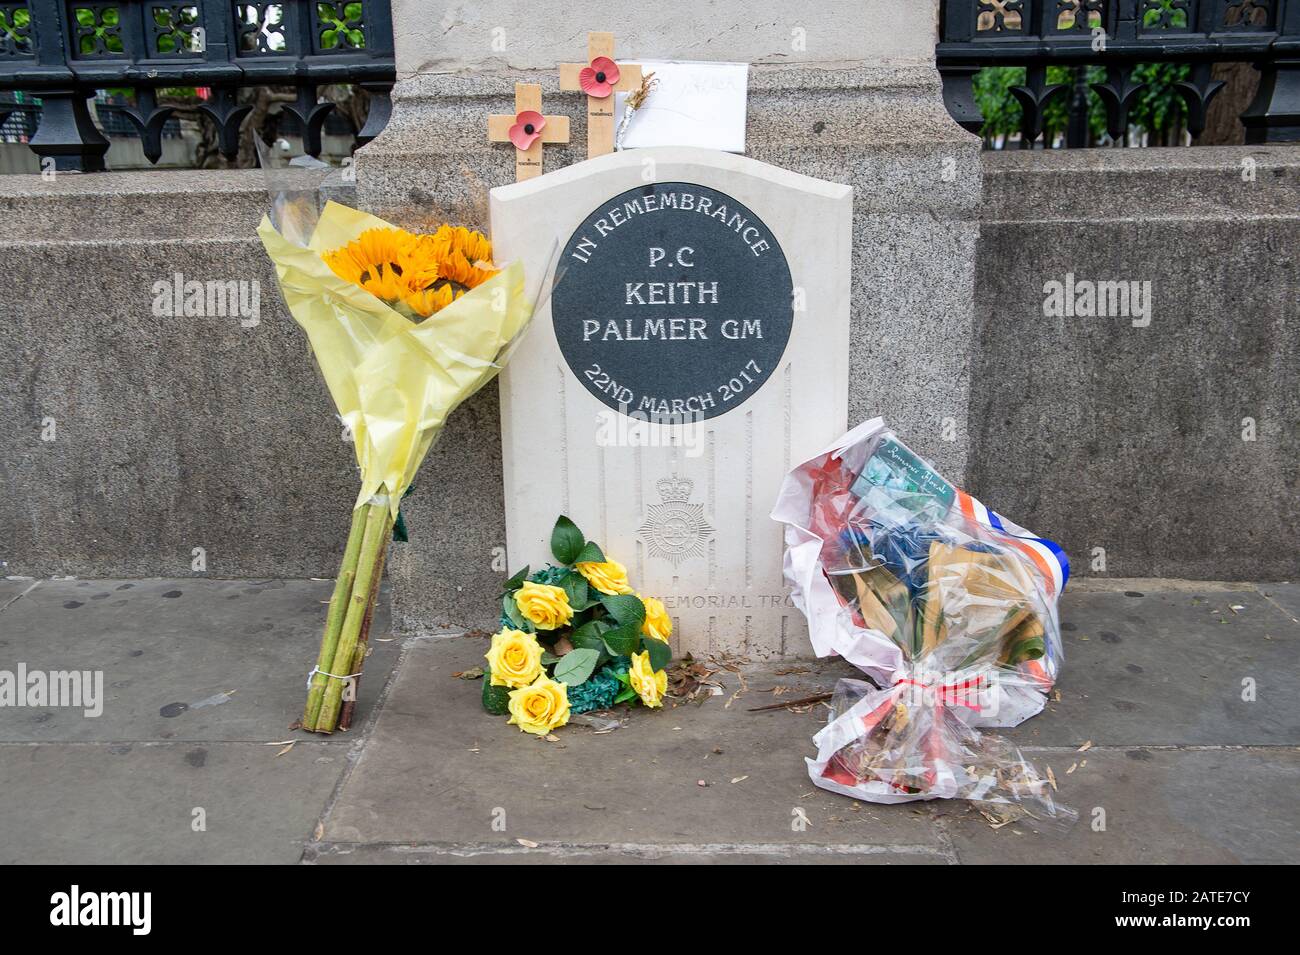 Westminster, Londres, Royaume-Uni. 26 juin 2019. Les fleurs sont laissées en mémoire du PC Keith Palmer GM qui a été poignardé et est mort de ses blessures lors de l'Attaque de Westminster le 22 mars 2017 alors qu'il était au travail à la Chambre des communes. Après sa mort, il a reçu à titre posthume la Médaille George qui est le deuxième prix le plus élevé pour la bravoure "pas devant l'ennemi". Crédit : Maureen Mclean/Alay Banque D'Images